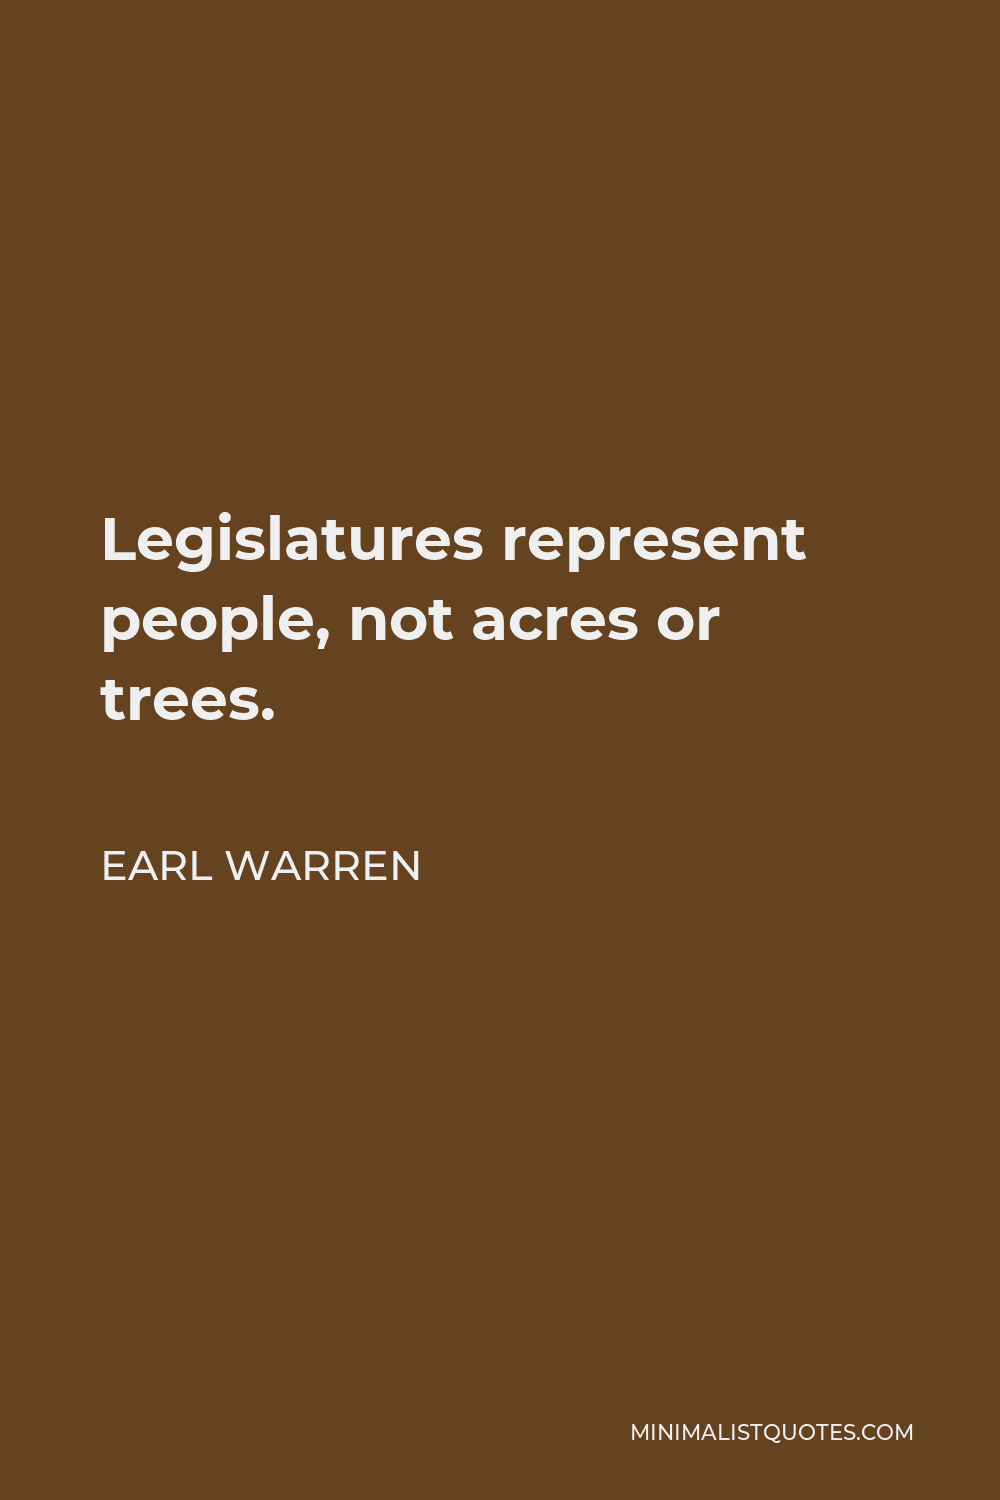 Earl Warren Quote - Legislatures represent people, not acres or trees.